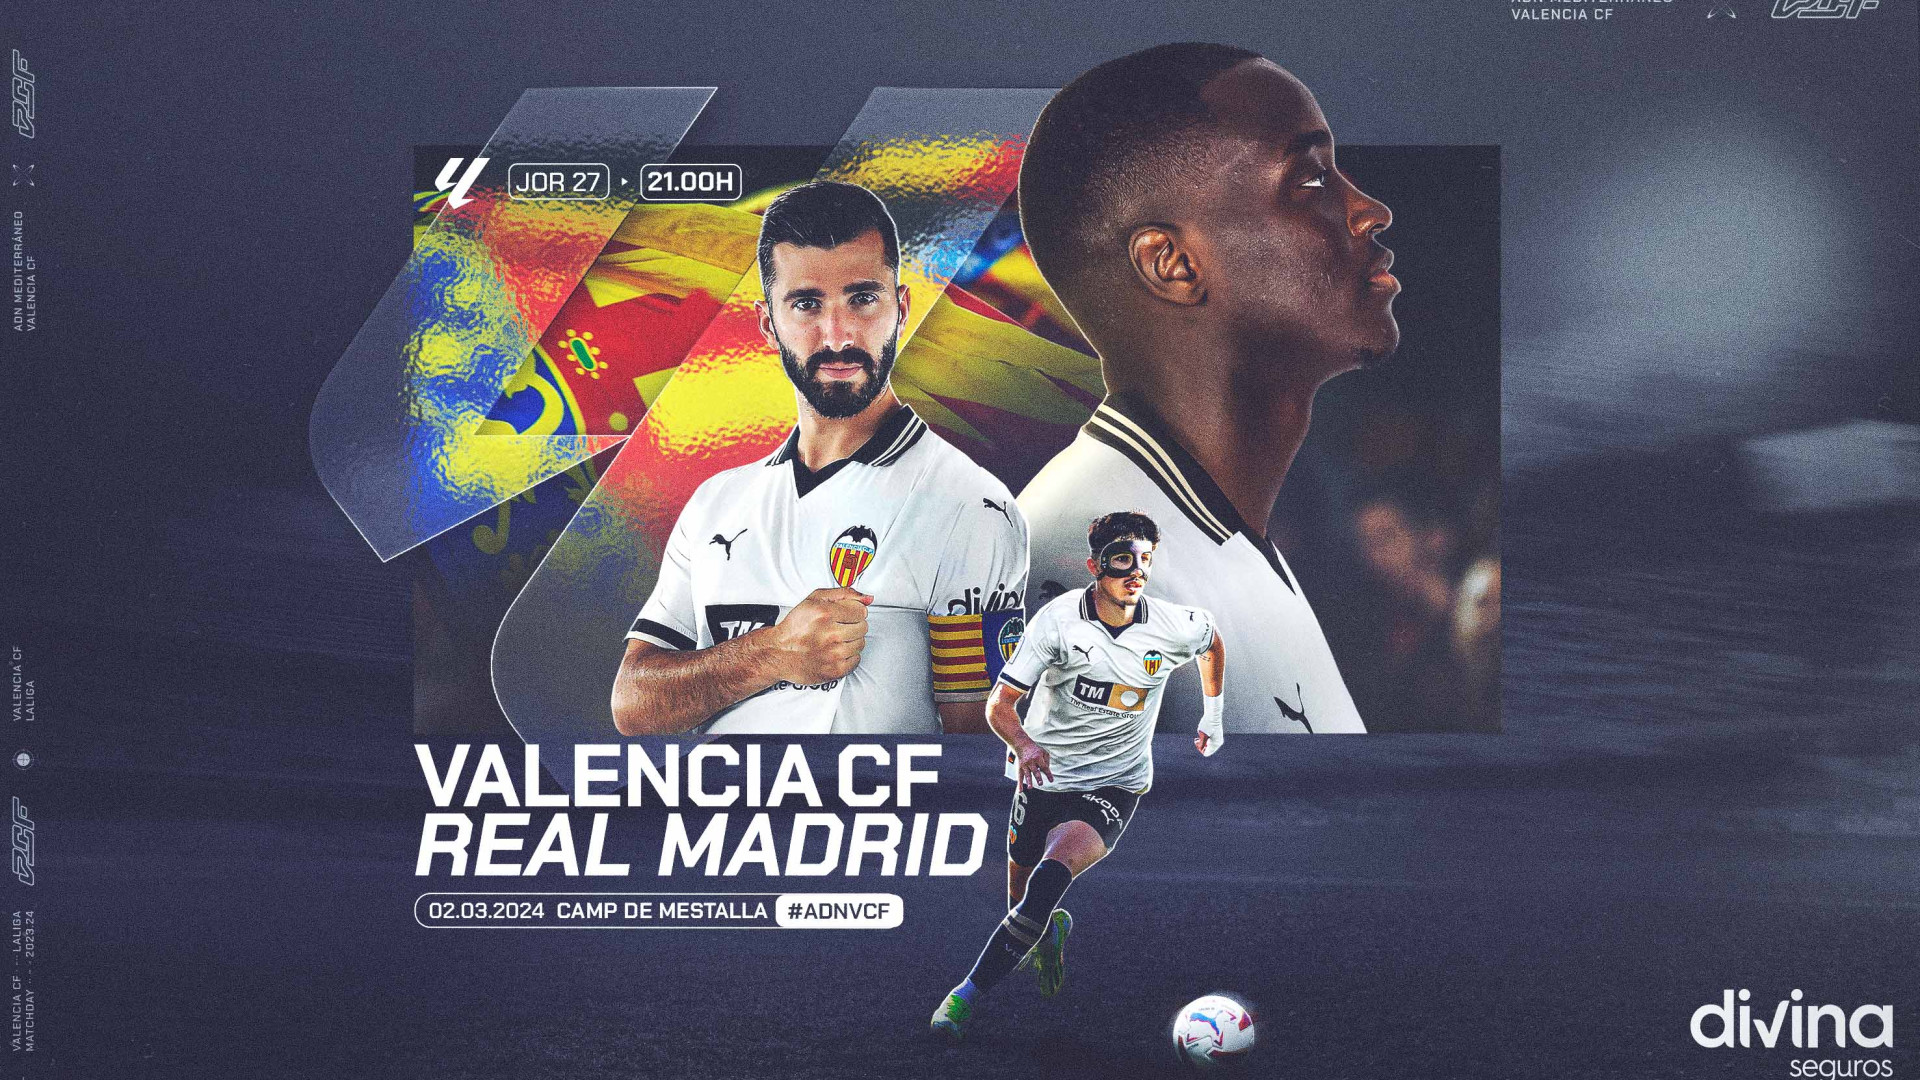 Valencia club de fútbol real madrid